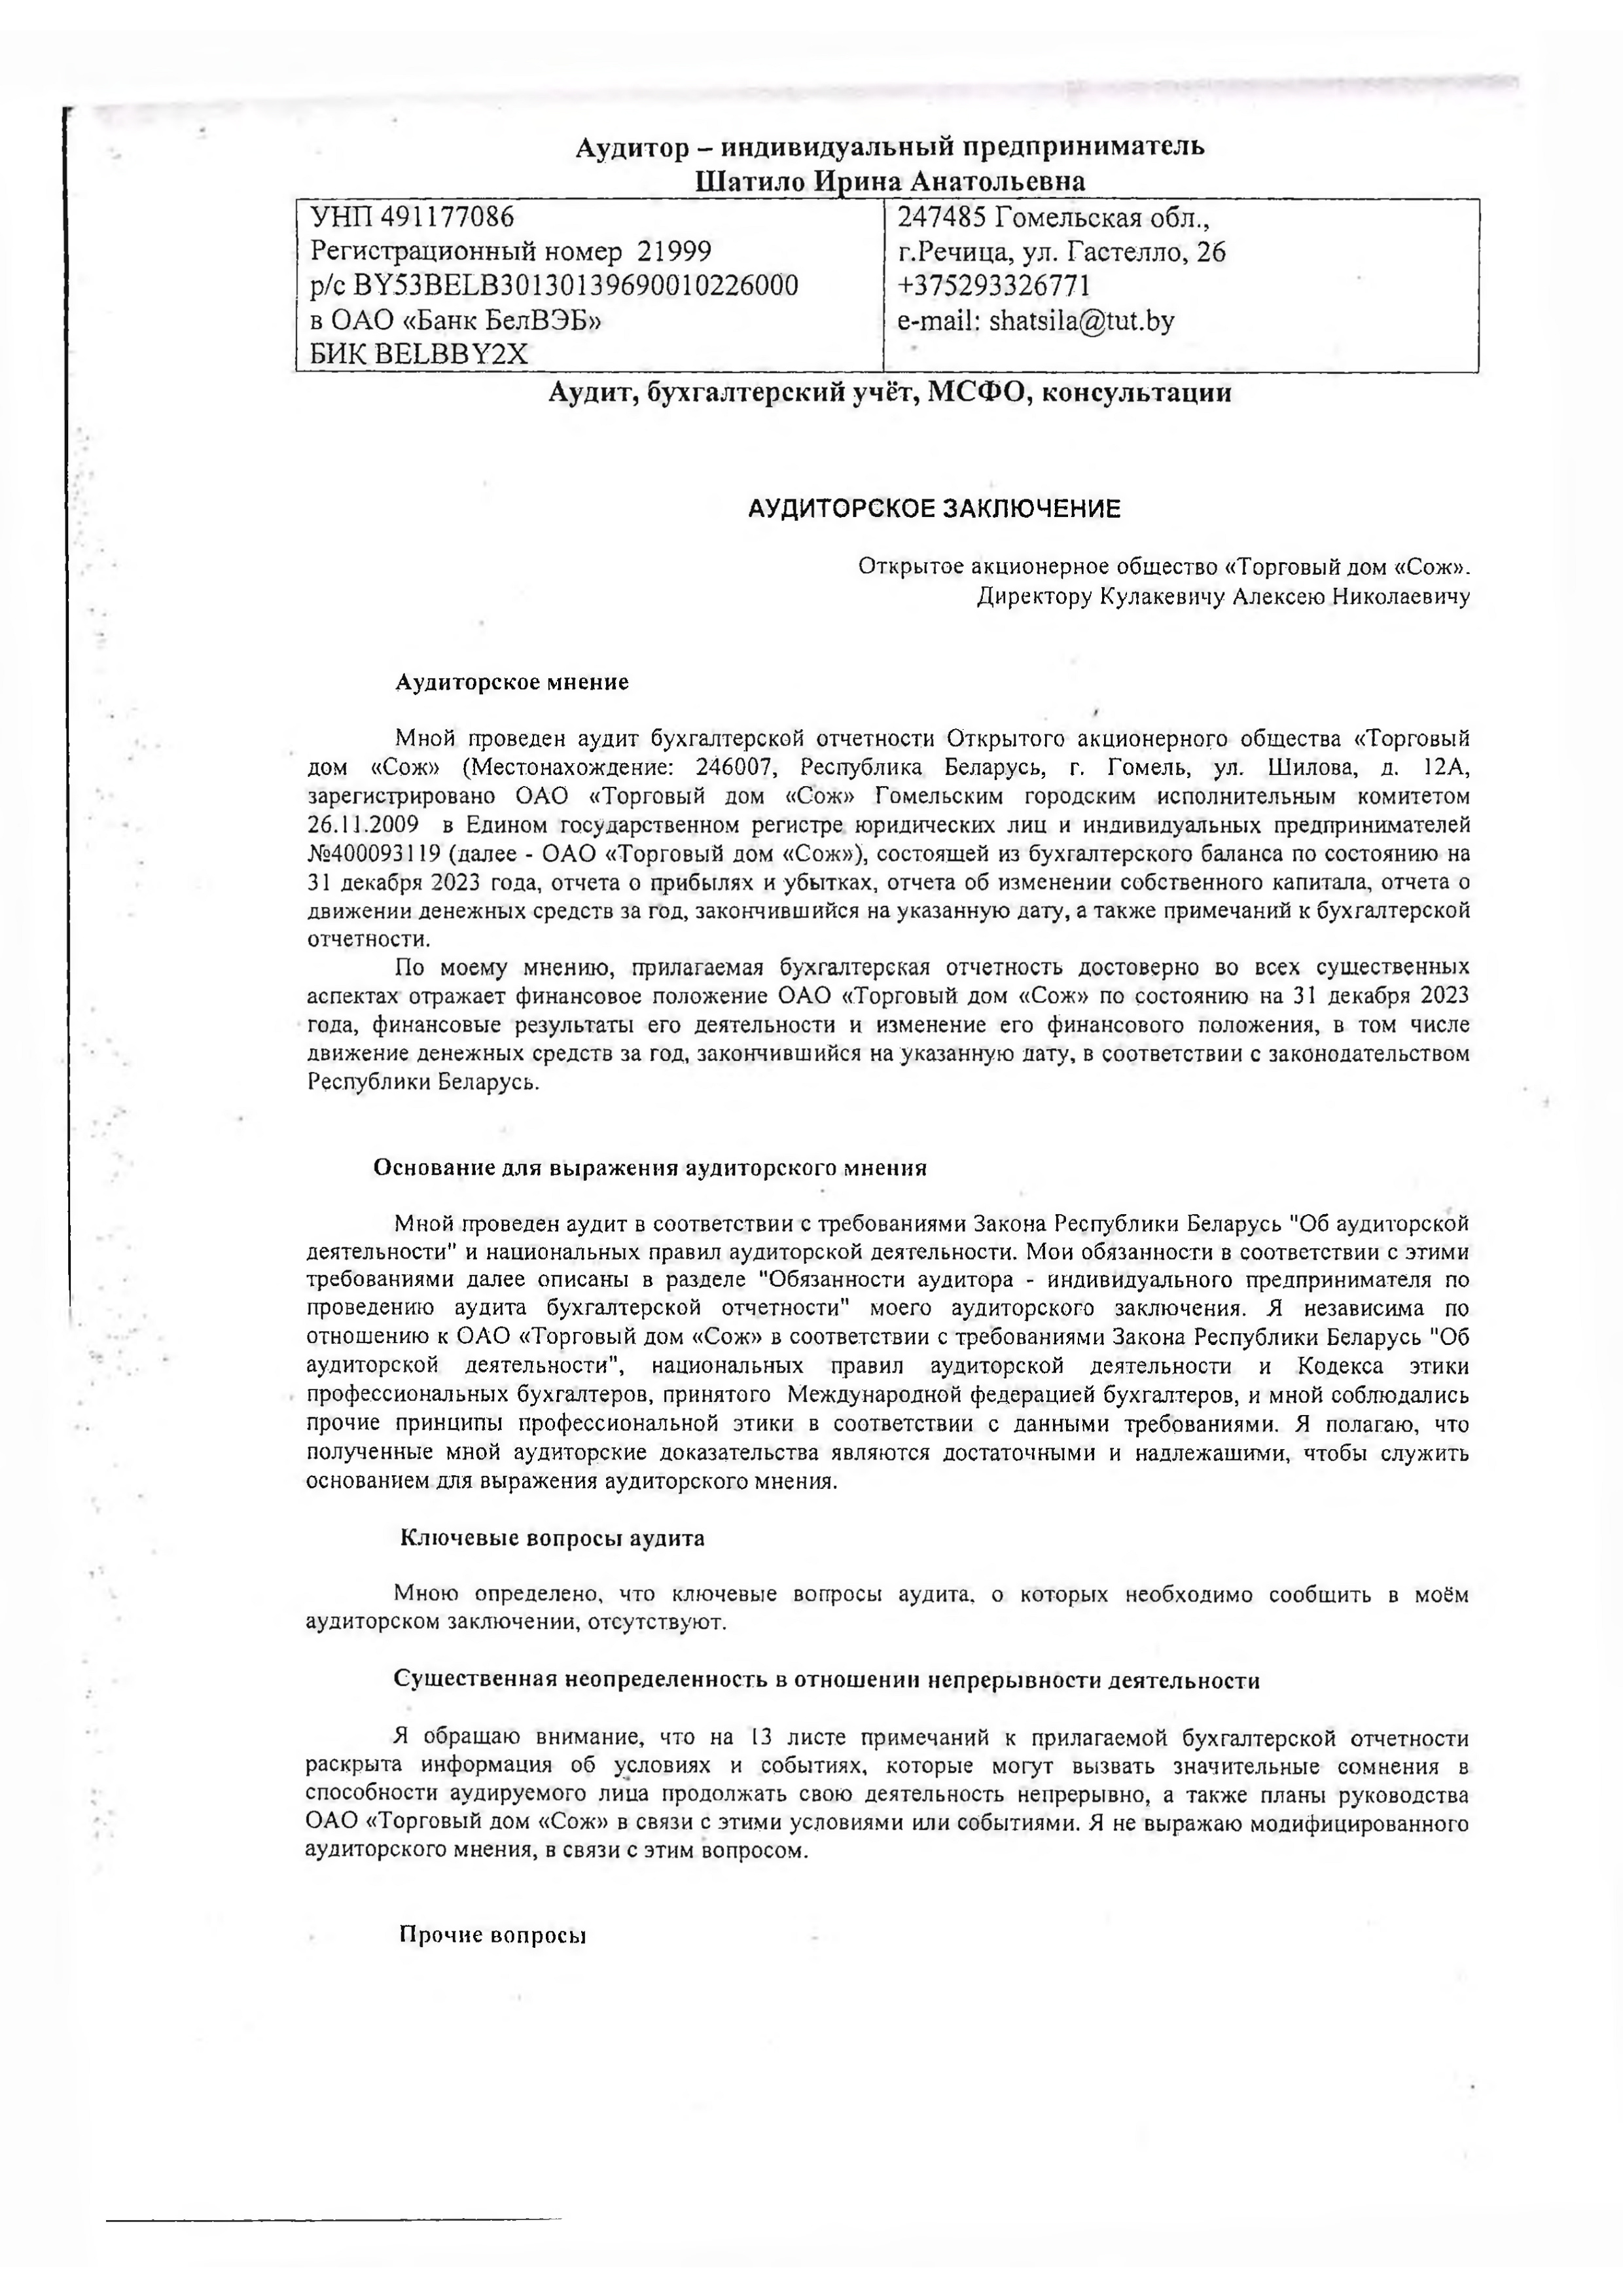 ОАО Торговый дом Сож - Аудиторское заключение за 2023 год